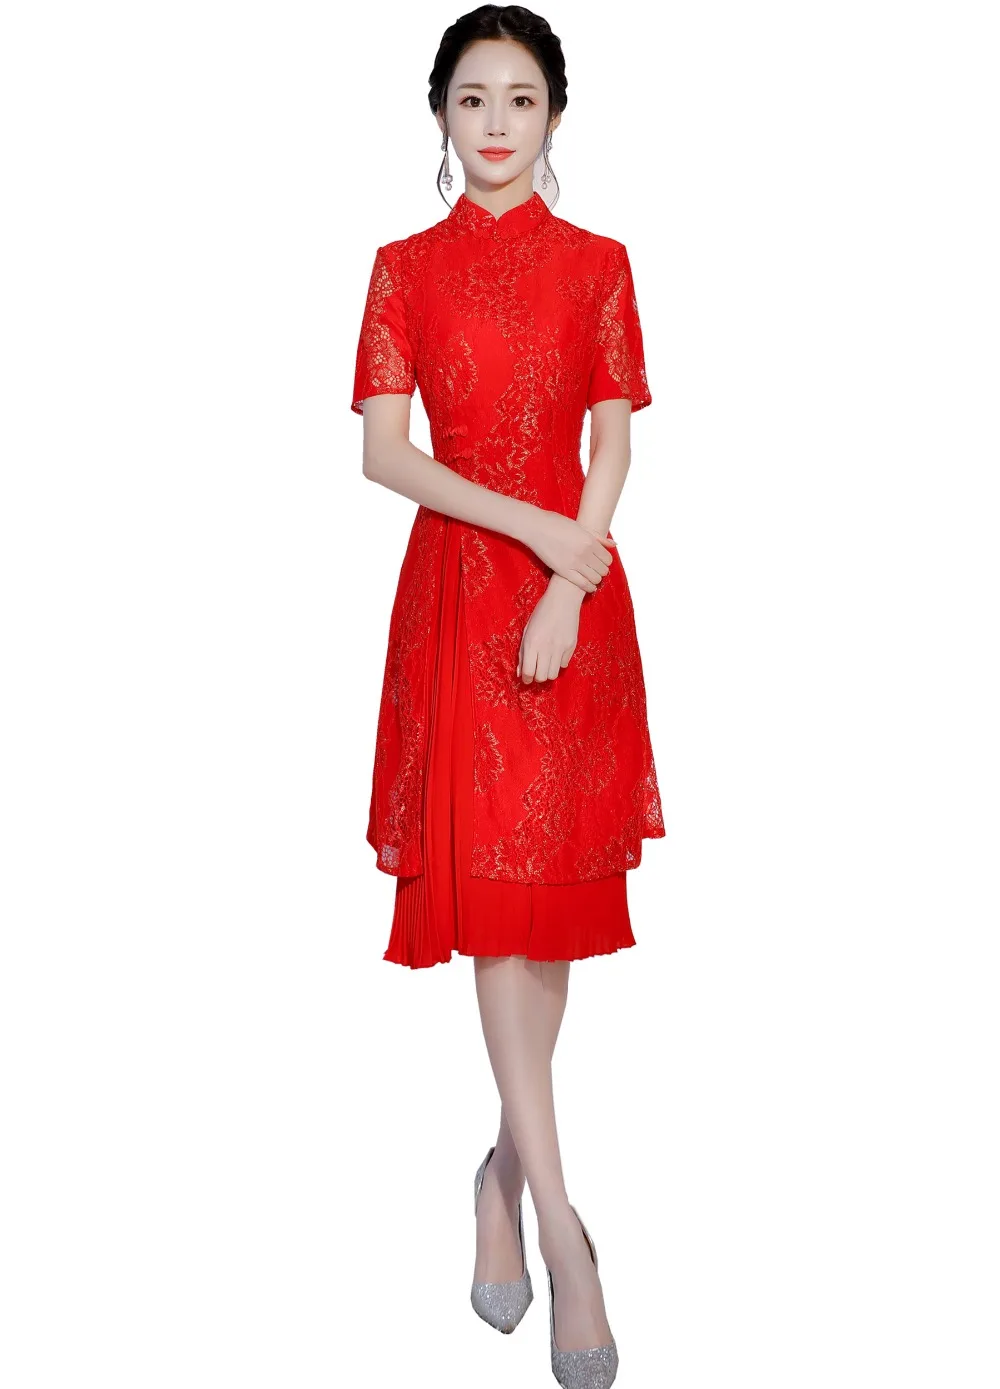 

Шанхай история с коротким рукавом cheongsam платье китайское платье народный стиль платье Китайская традиционная одежда Кружева Qipao